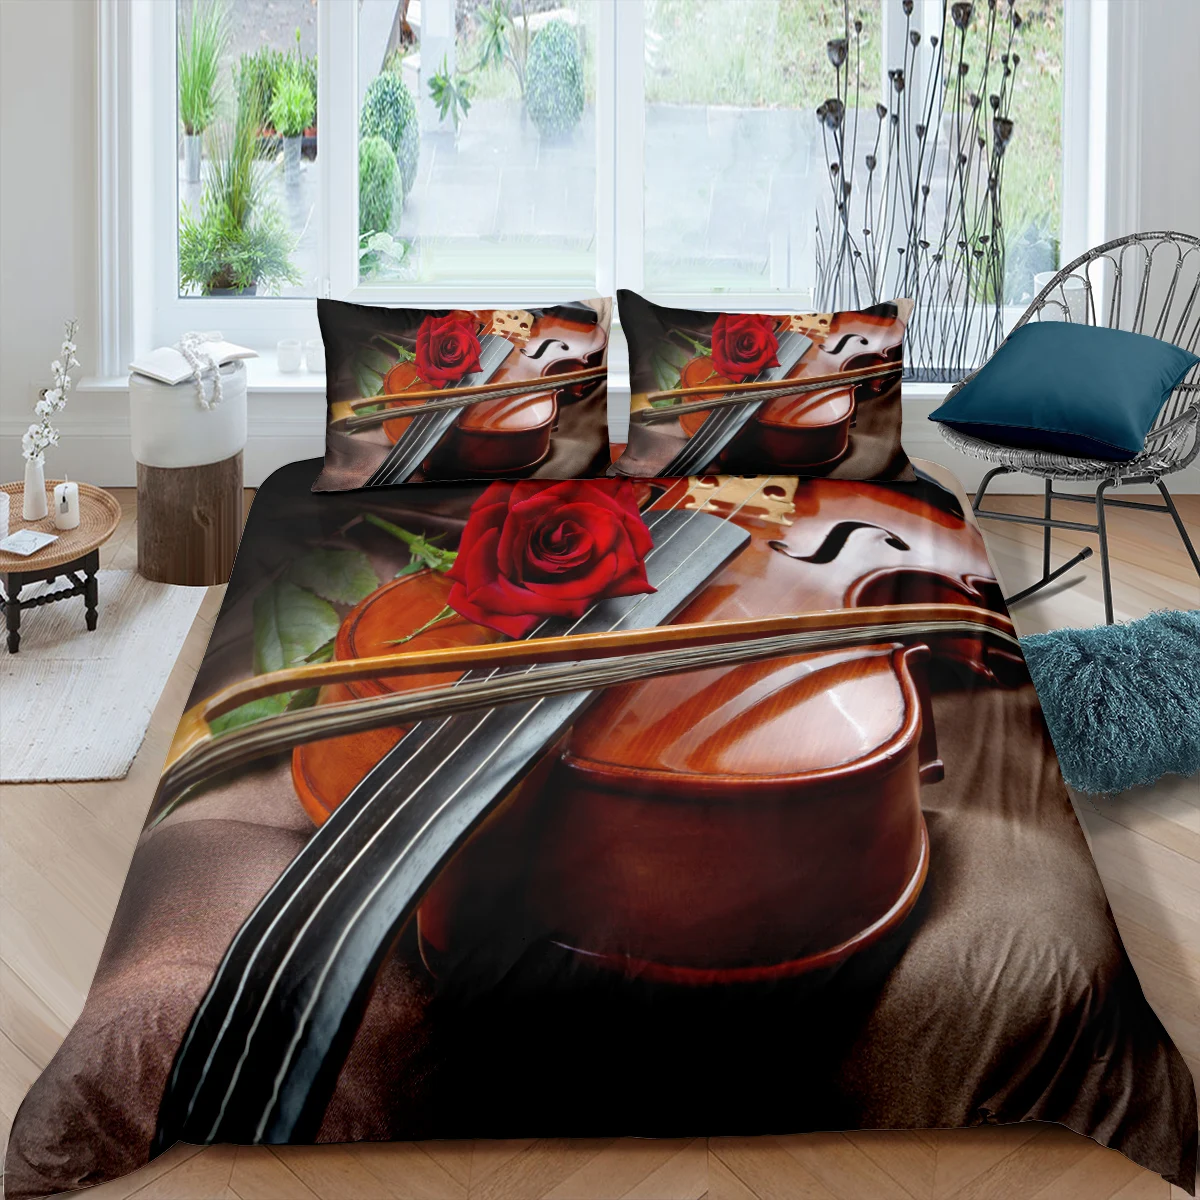 

Home Living Luxus 3D Cello Bettwäsche Set Bettbezug-set Kissenbezug Kinder Bettwäsche Set Königin und König EU/UNS/AU/UK Größe